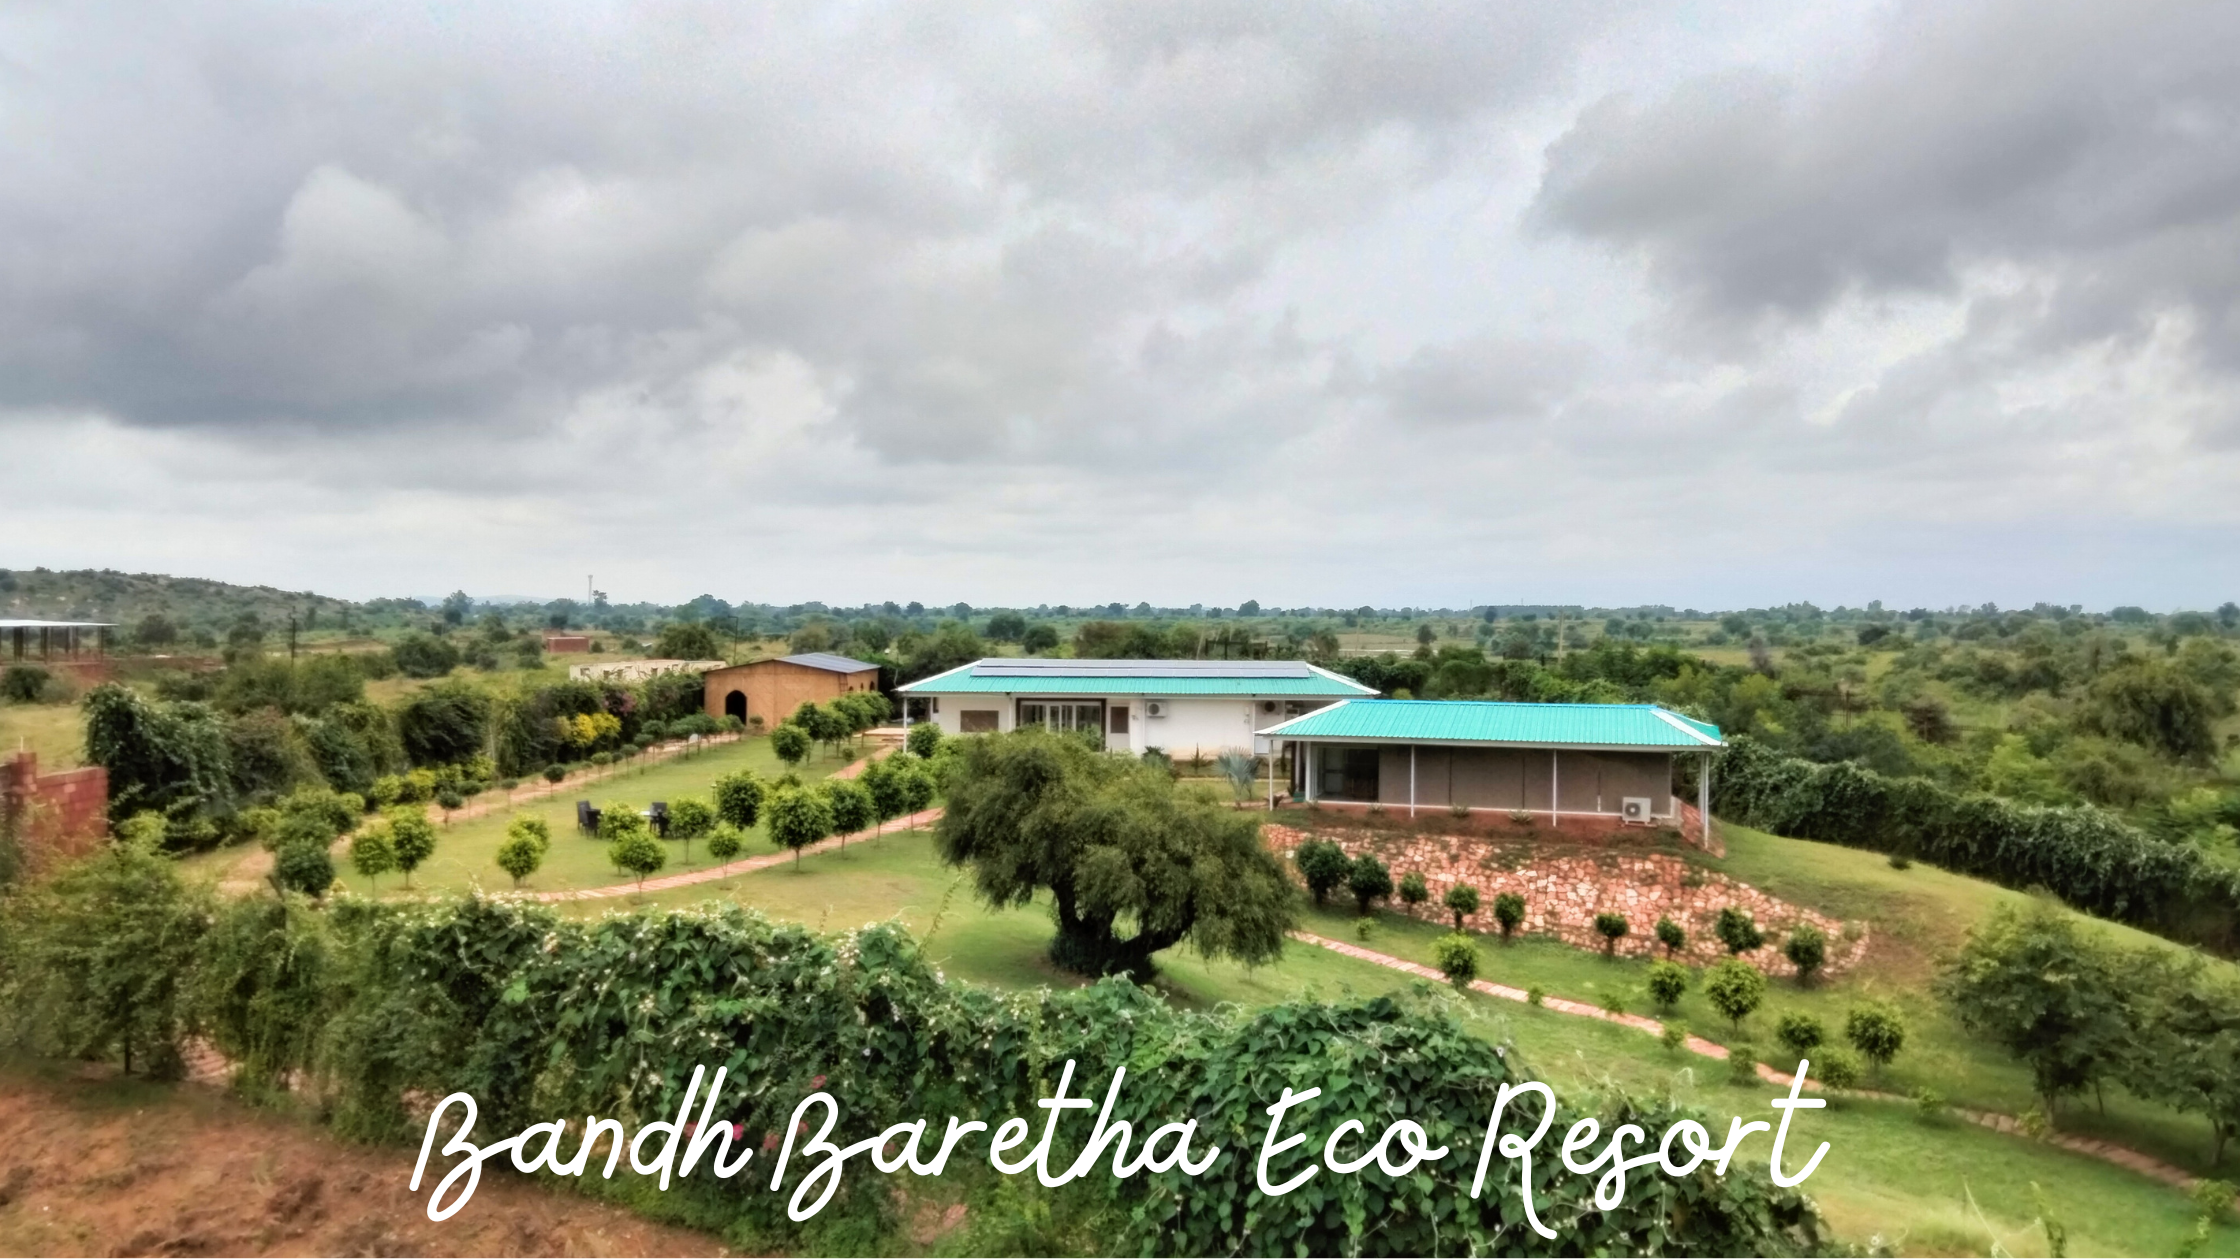 Bandh baretha eco resort, bharatpur